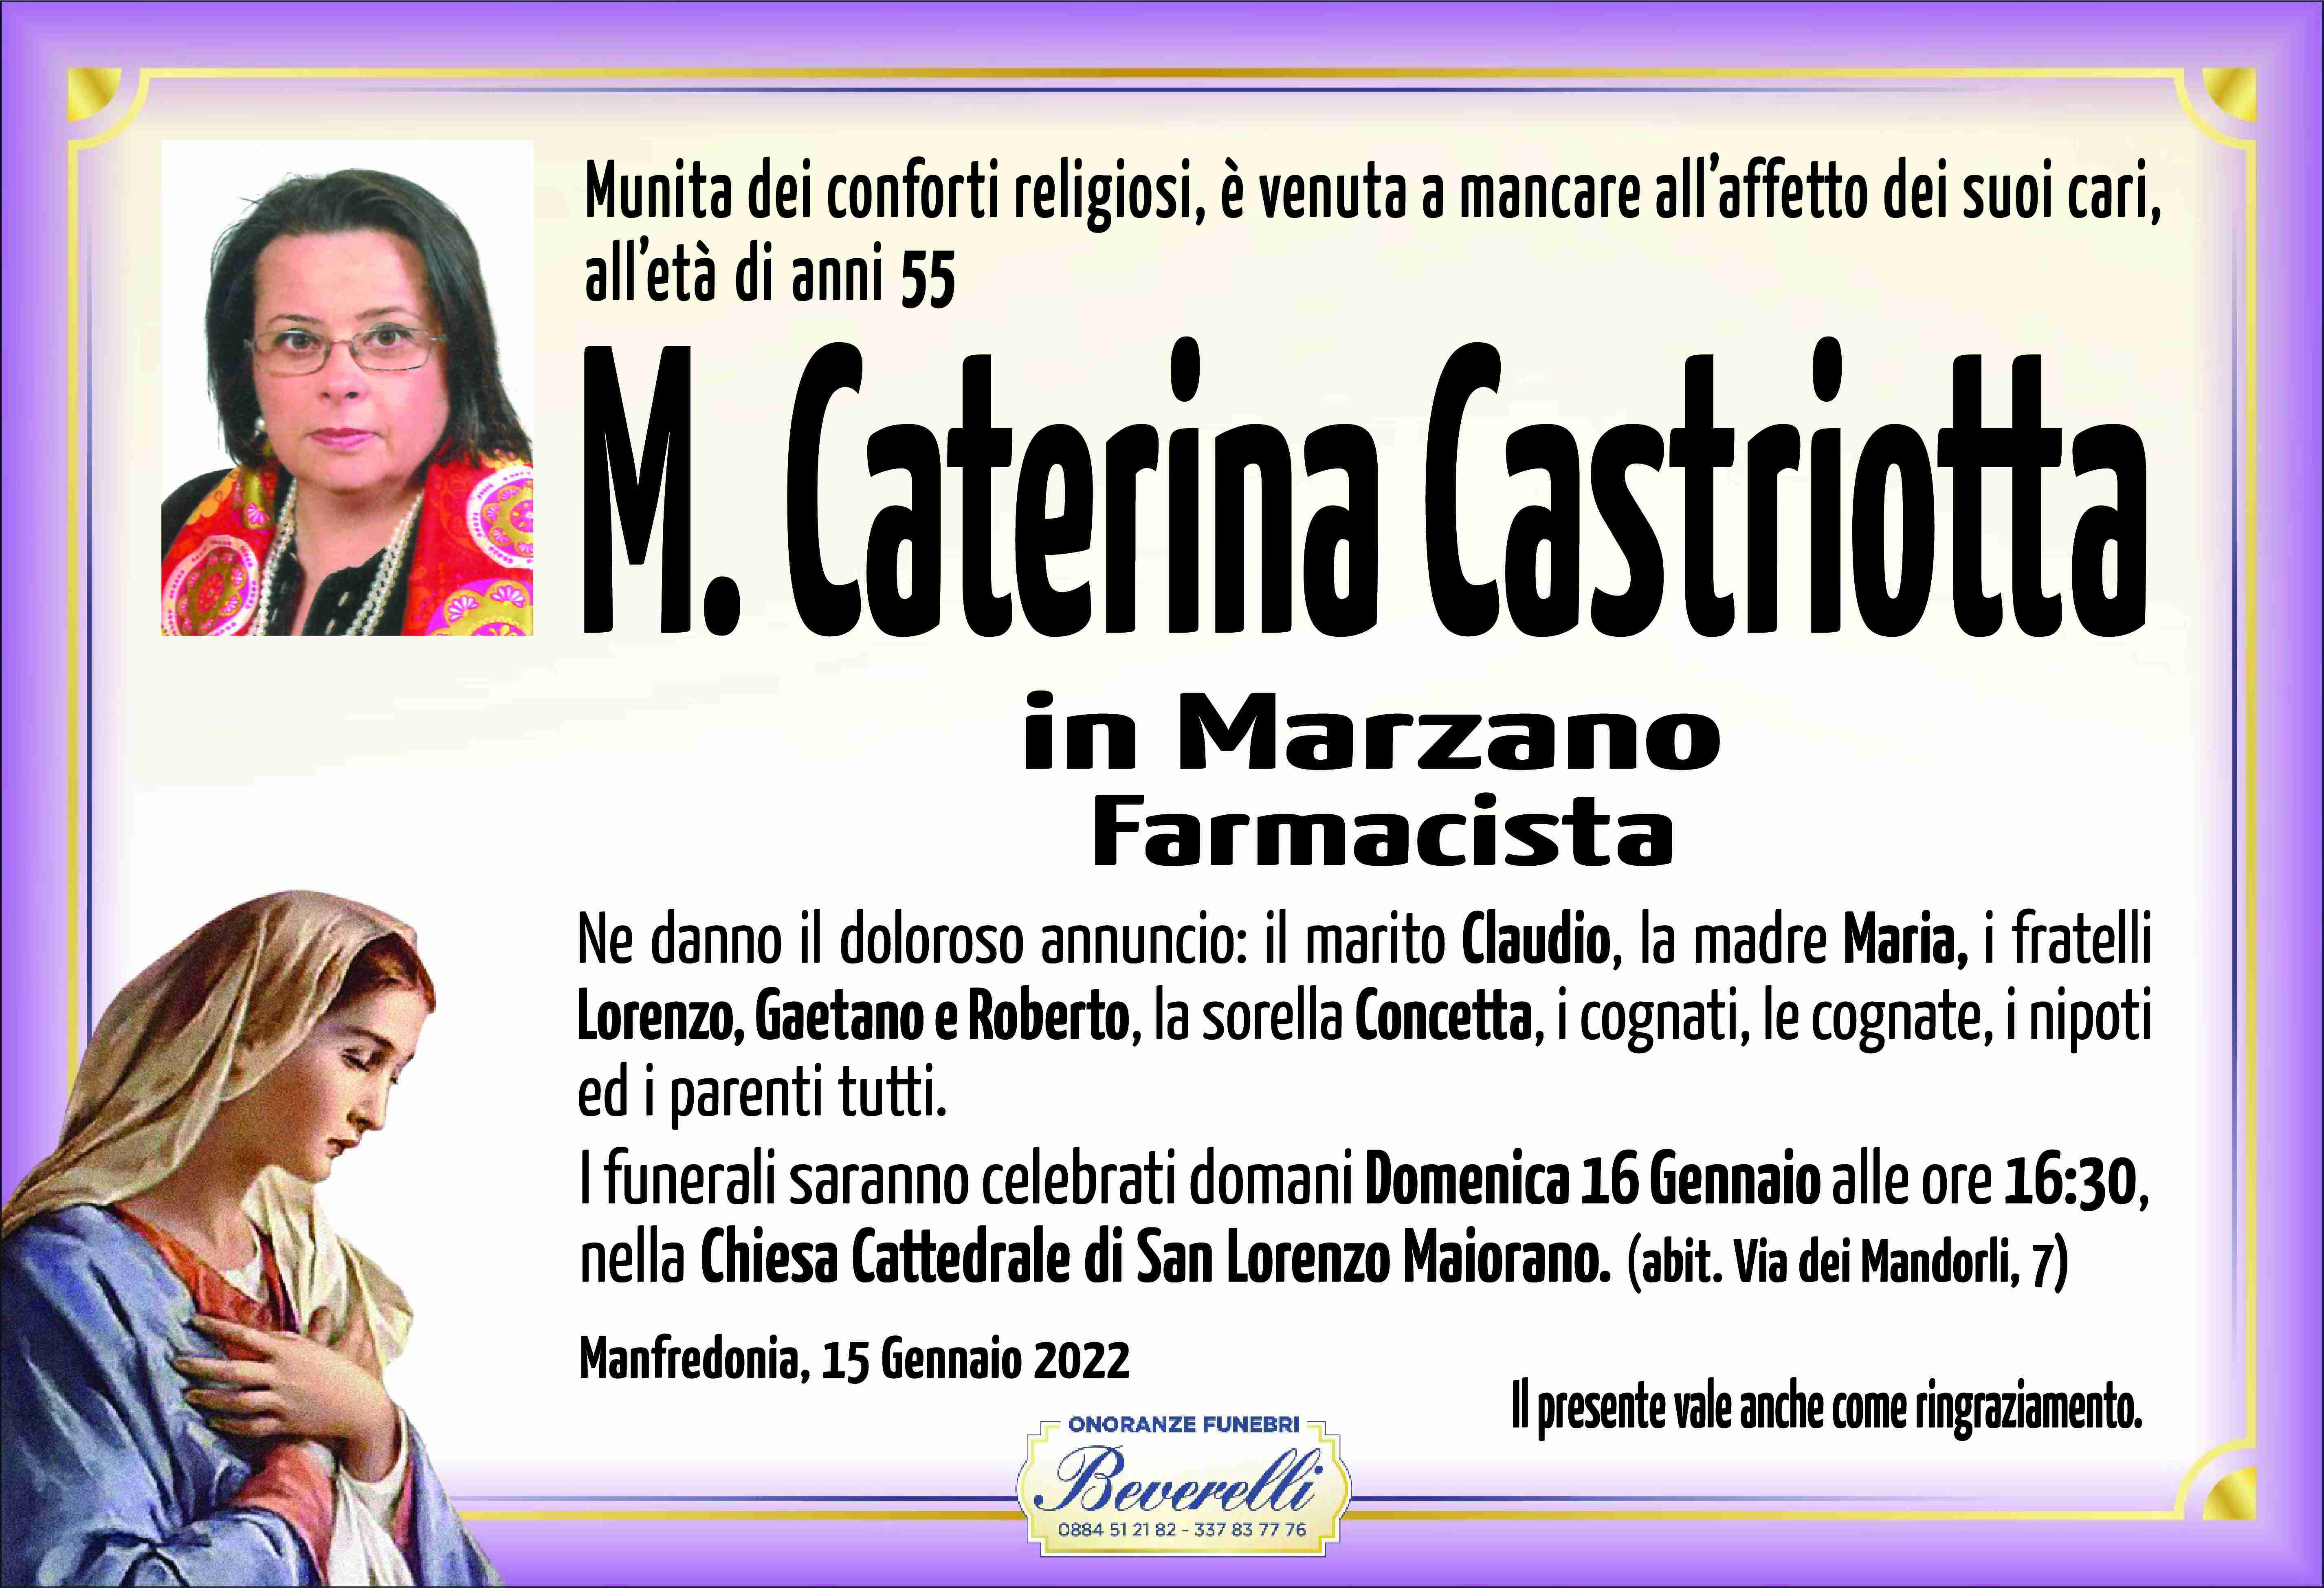 Maria Caterina Castriotta